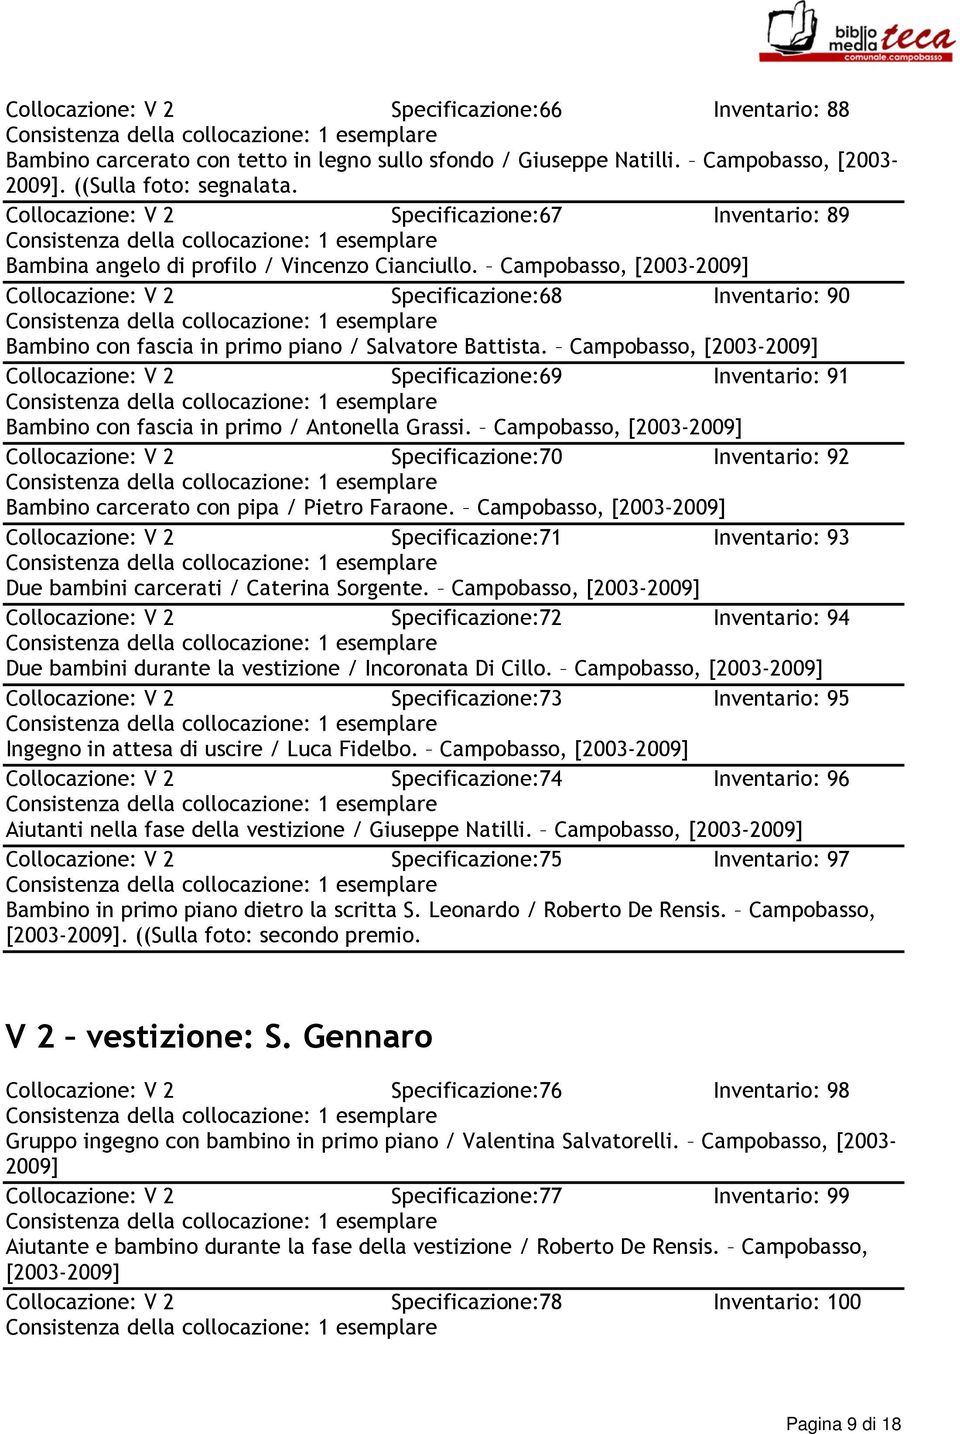 Campobasso, Collocazione: V 2 Specificazione:68 Inventario: 90 Bambino con fascia in primo piano / Salvatore Battista.